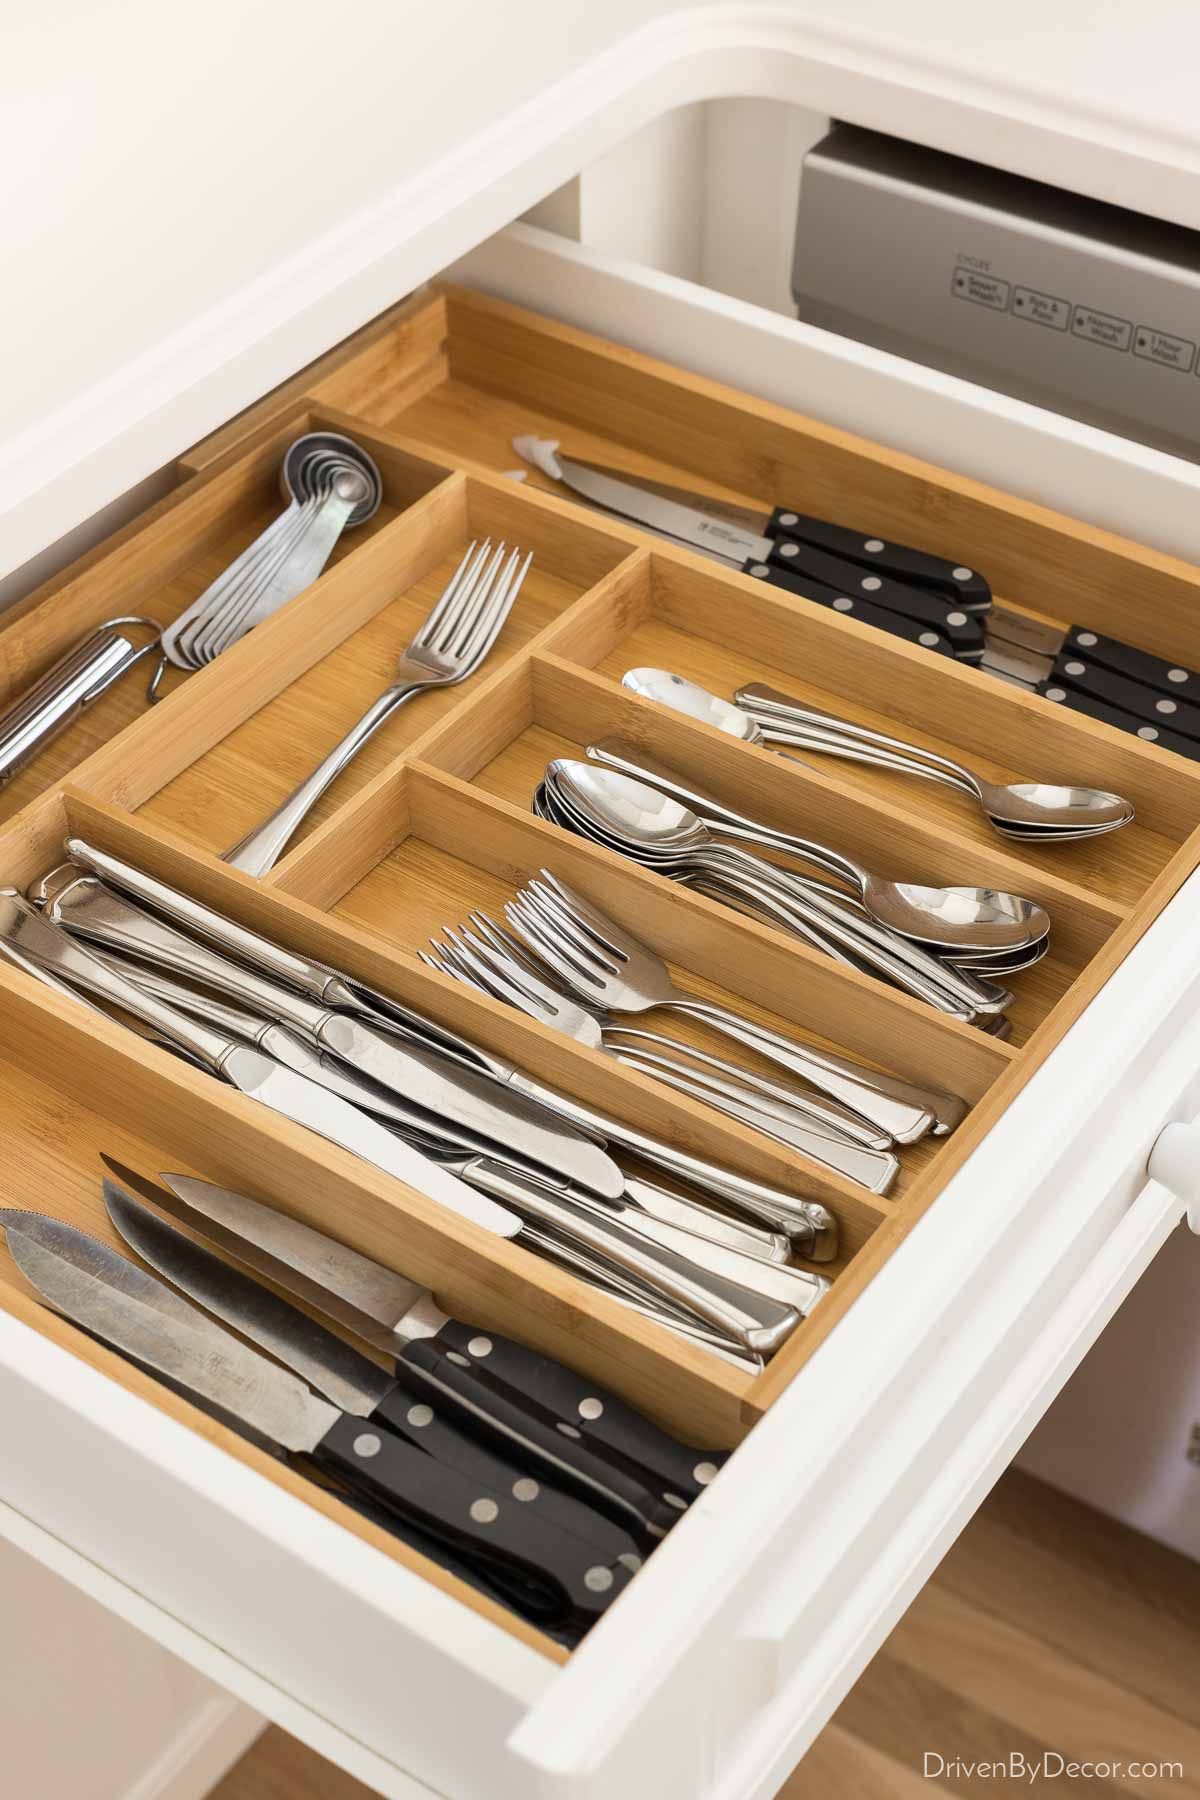 https://www.drivenbydecor.com/wp-content/uploads/2021/09/kitchen-drawer-silverware-organizer.jpg